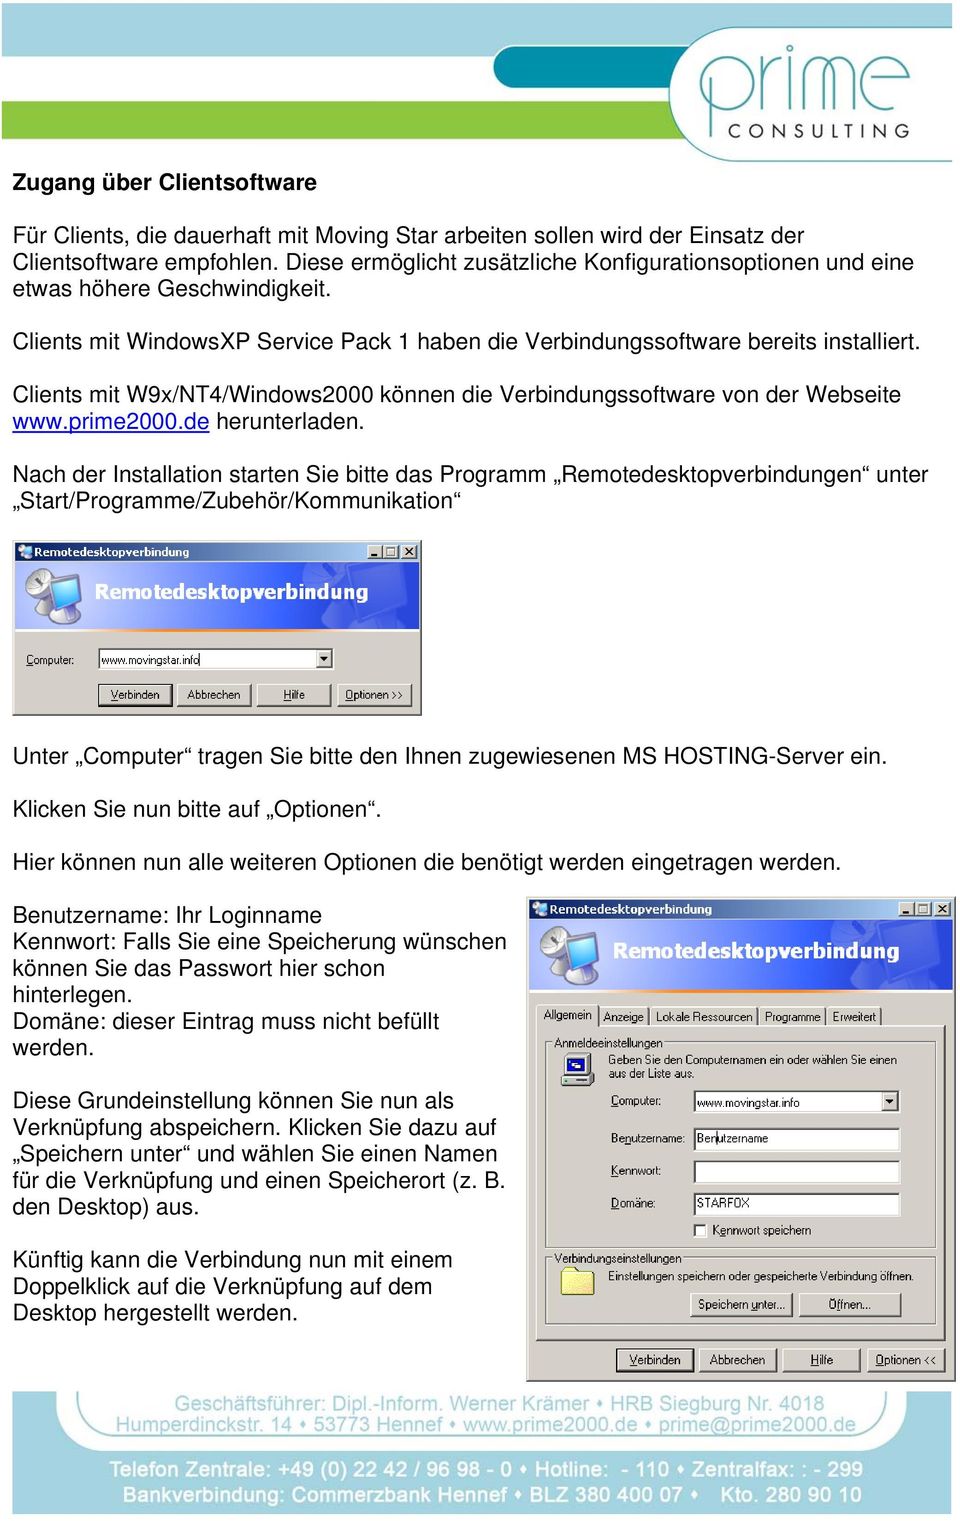 Clients mit W9x/NT4/Windows2000 können die Verbindungssoftware von der Webseite www.prime2000.de herunterladen.